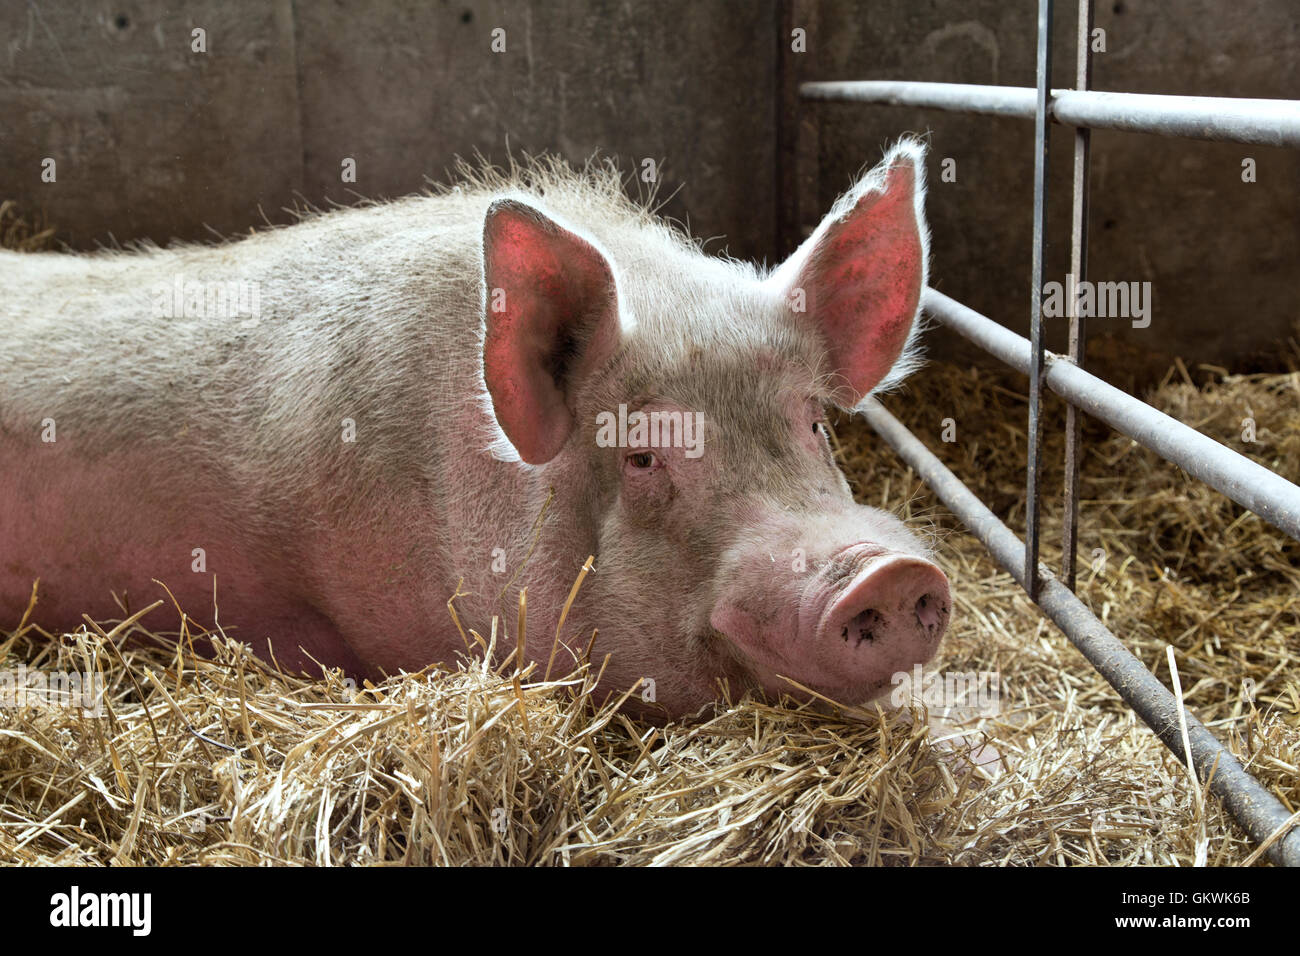 Boar resting on straw, pen. Stock Photo